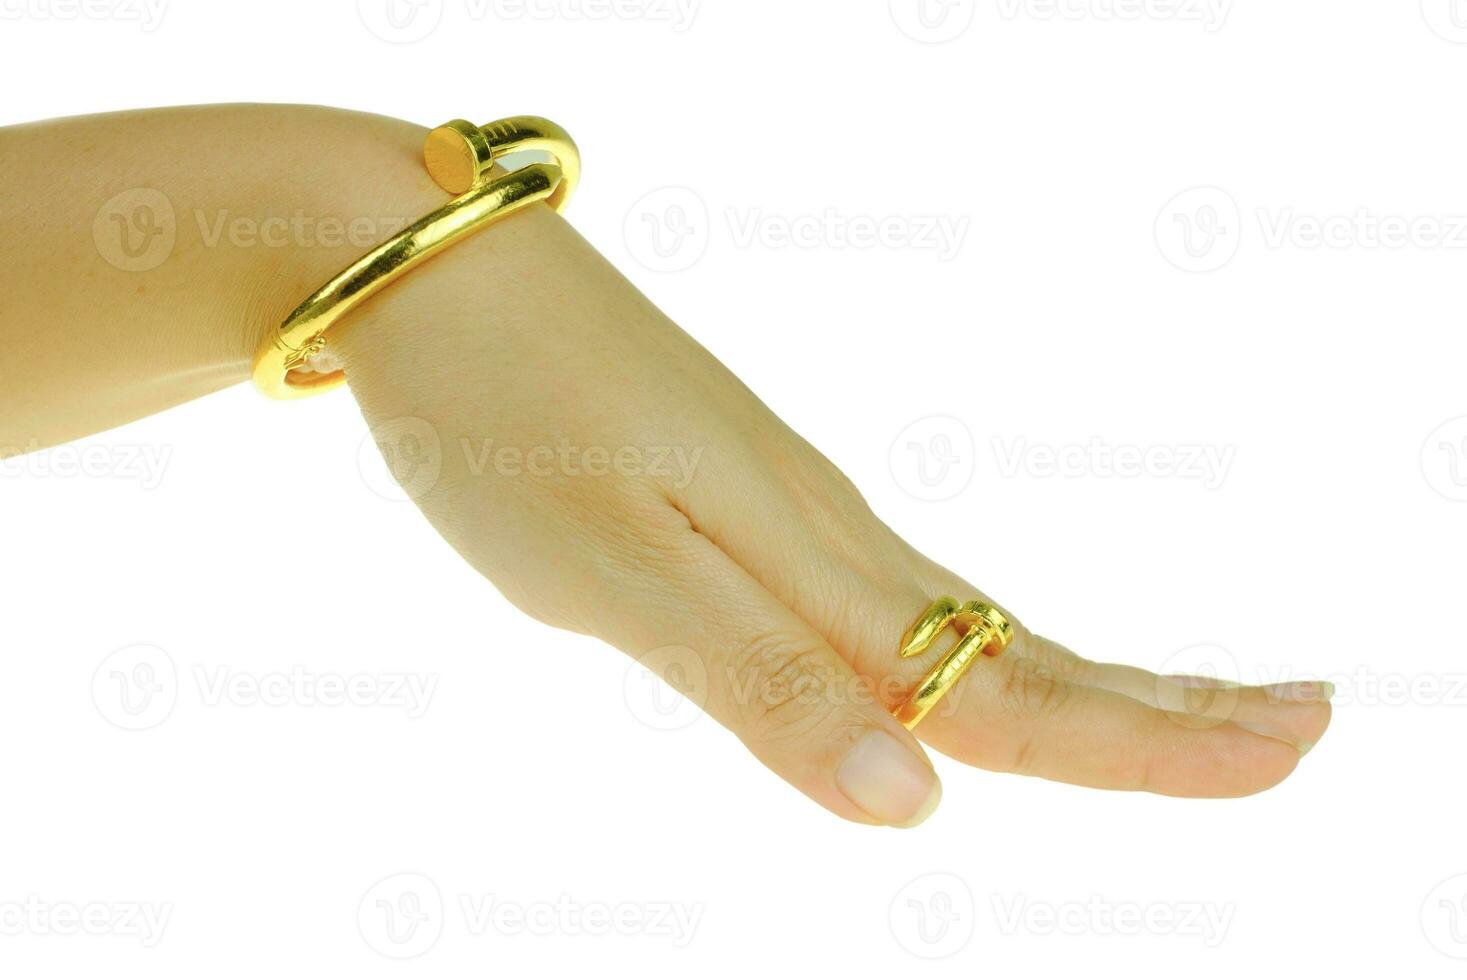 vrouwenhand met een gouden armband en ringjuwelen foto